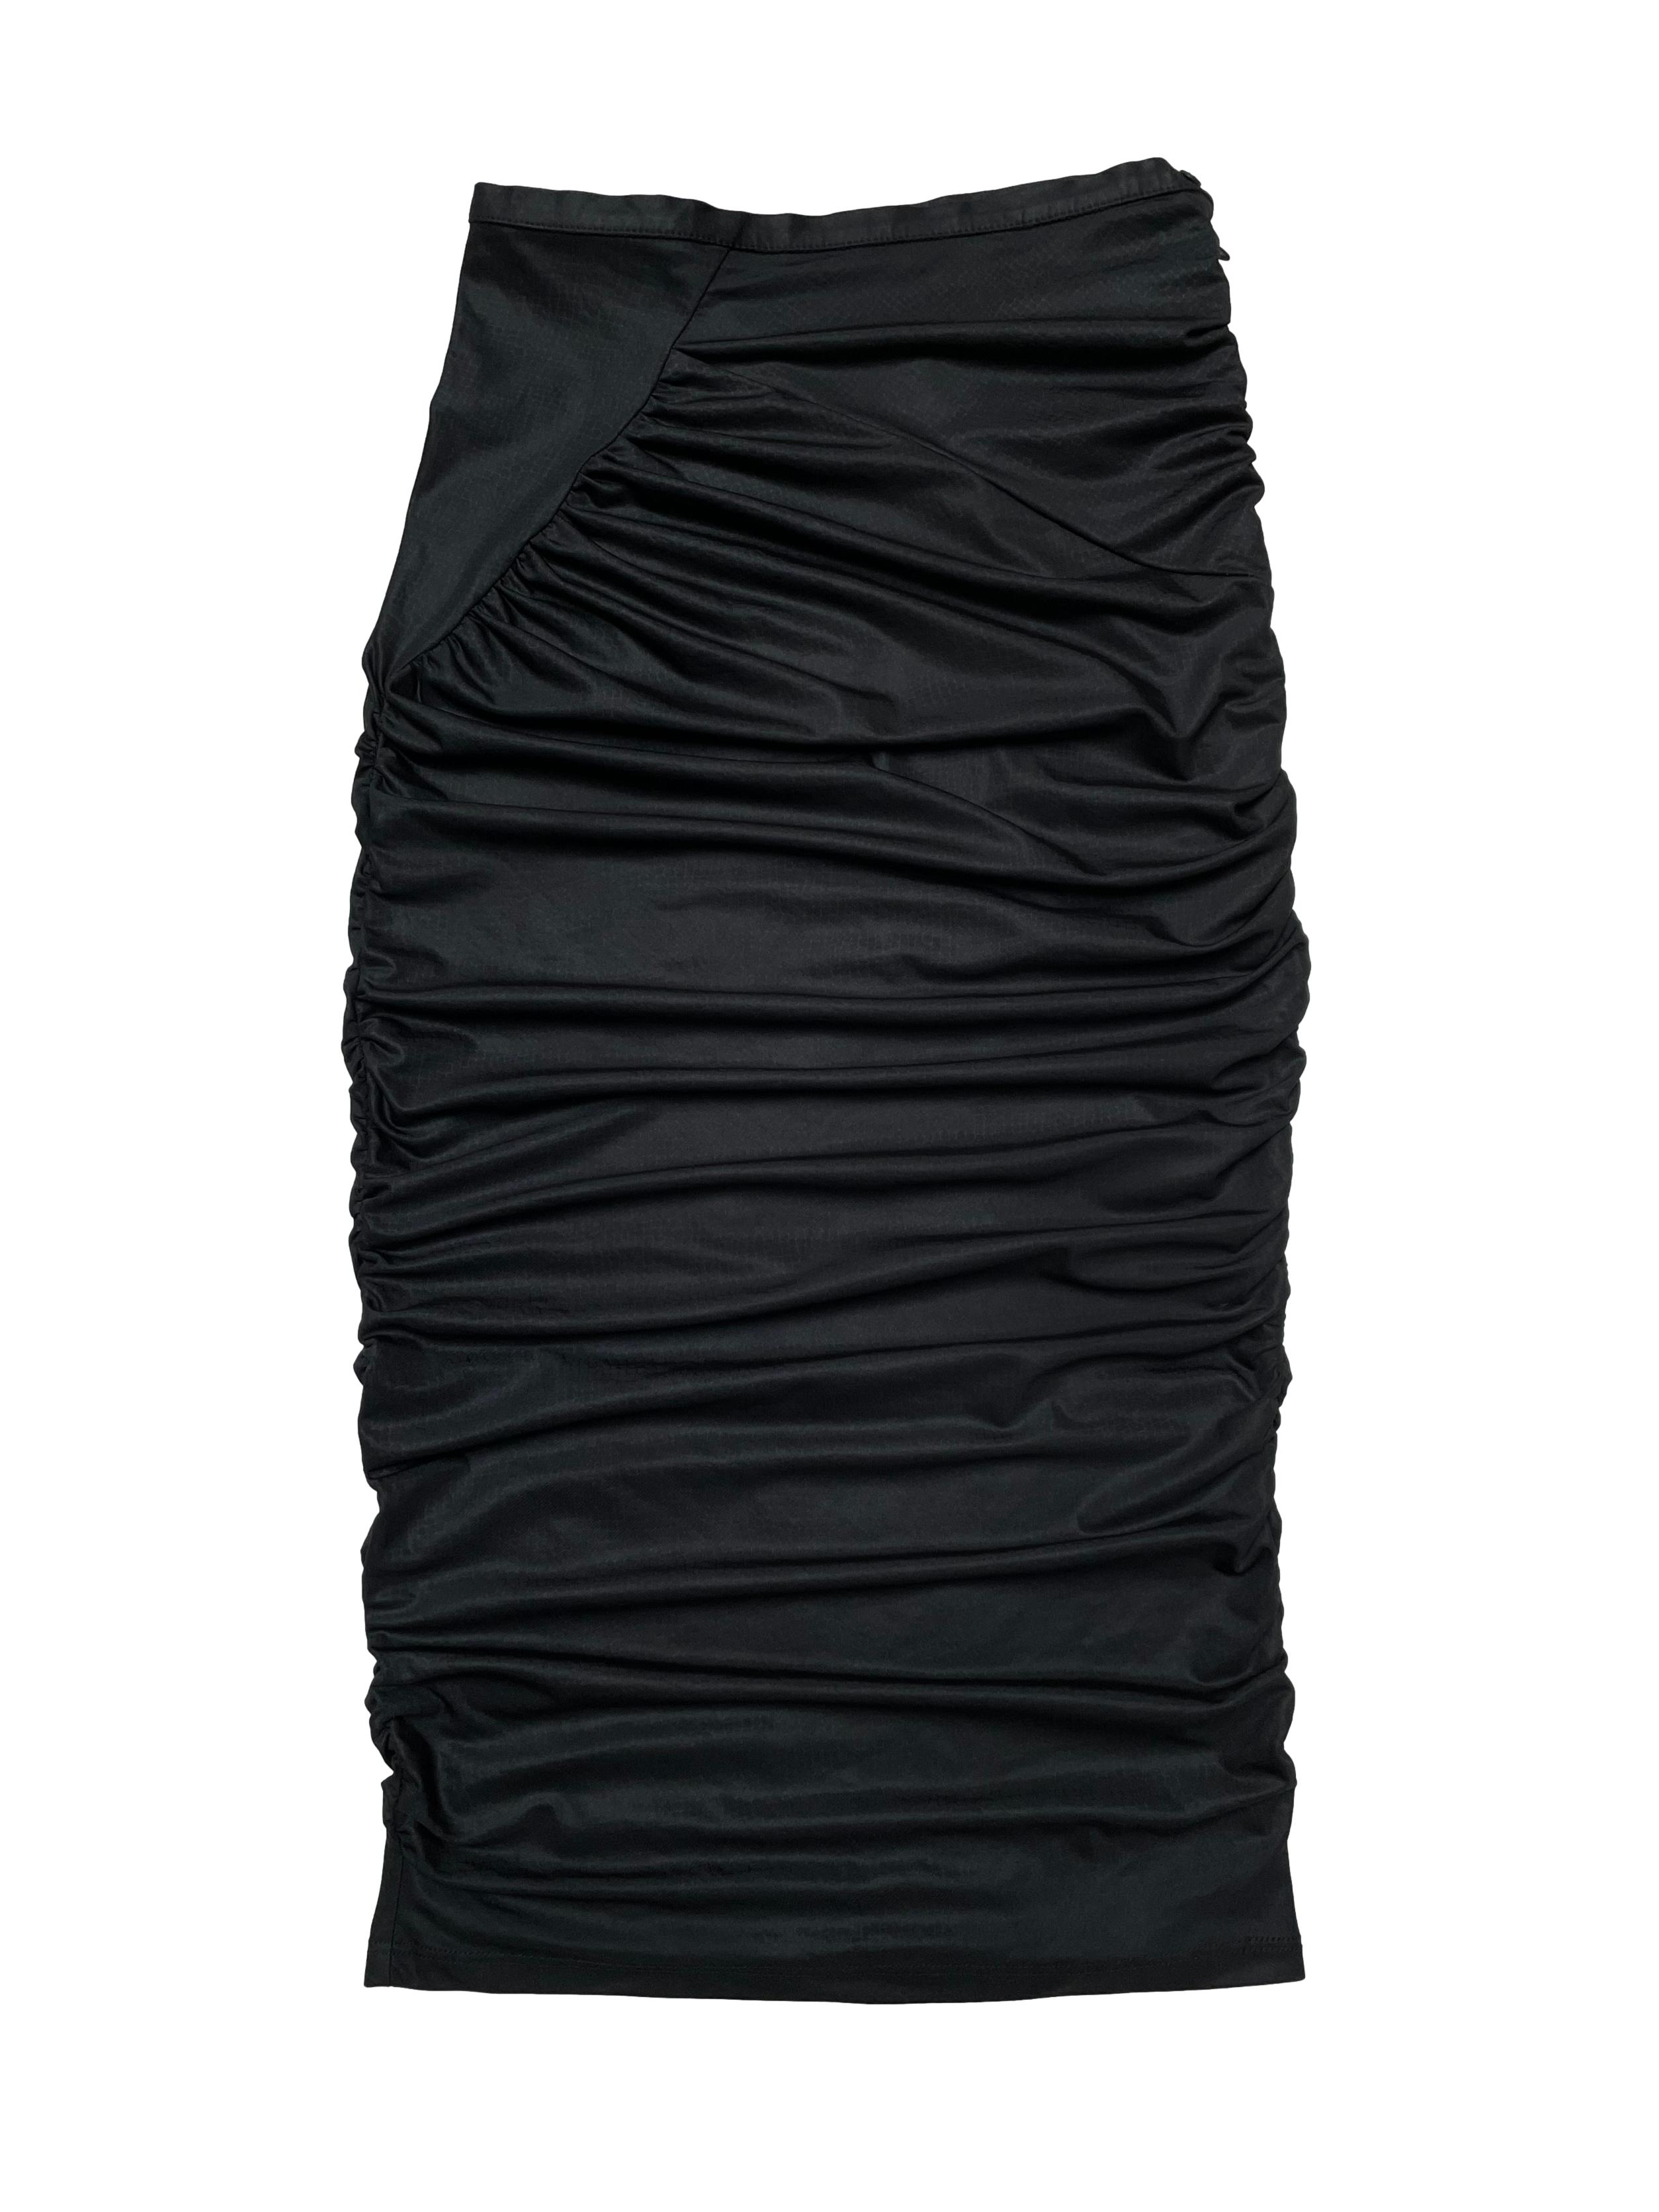 Falda midi Michelle Belau, corte tubo con drapeados, tiene cierre lateral. Cintura 70cm Largo 70-75cm (depende de qué tanto uses el drapeado)